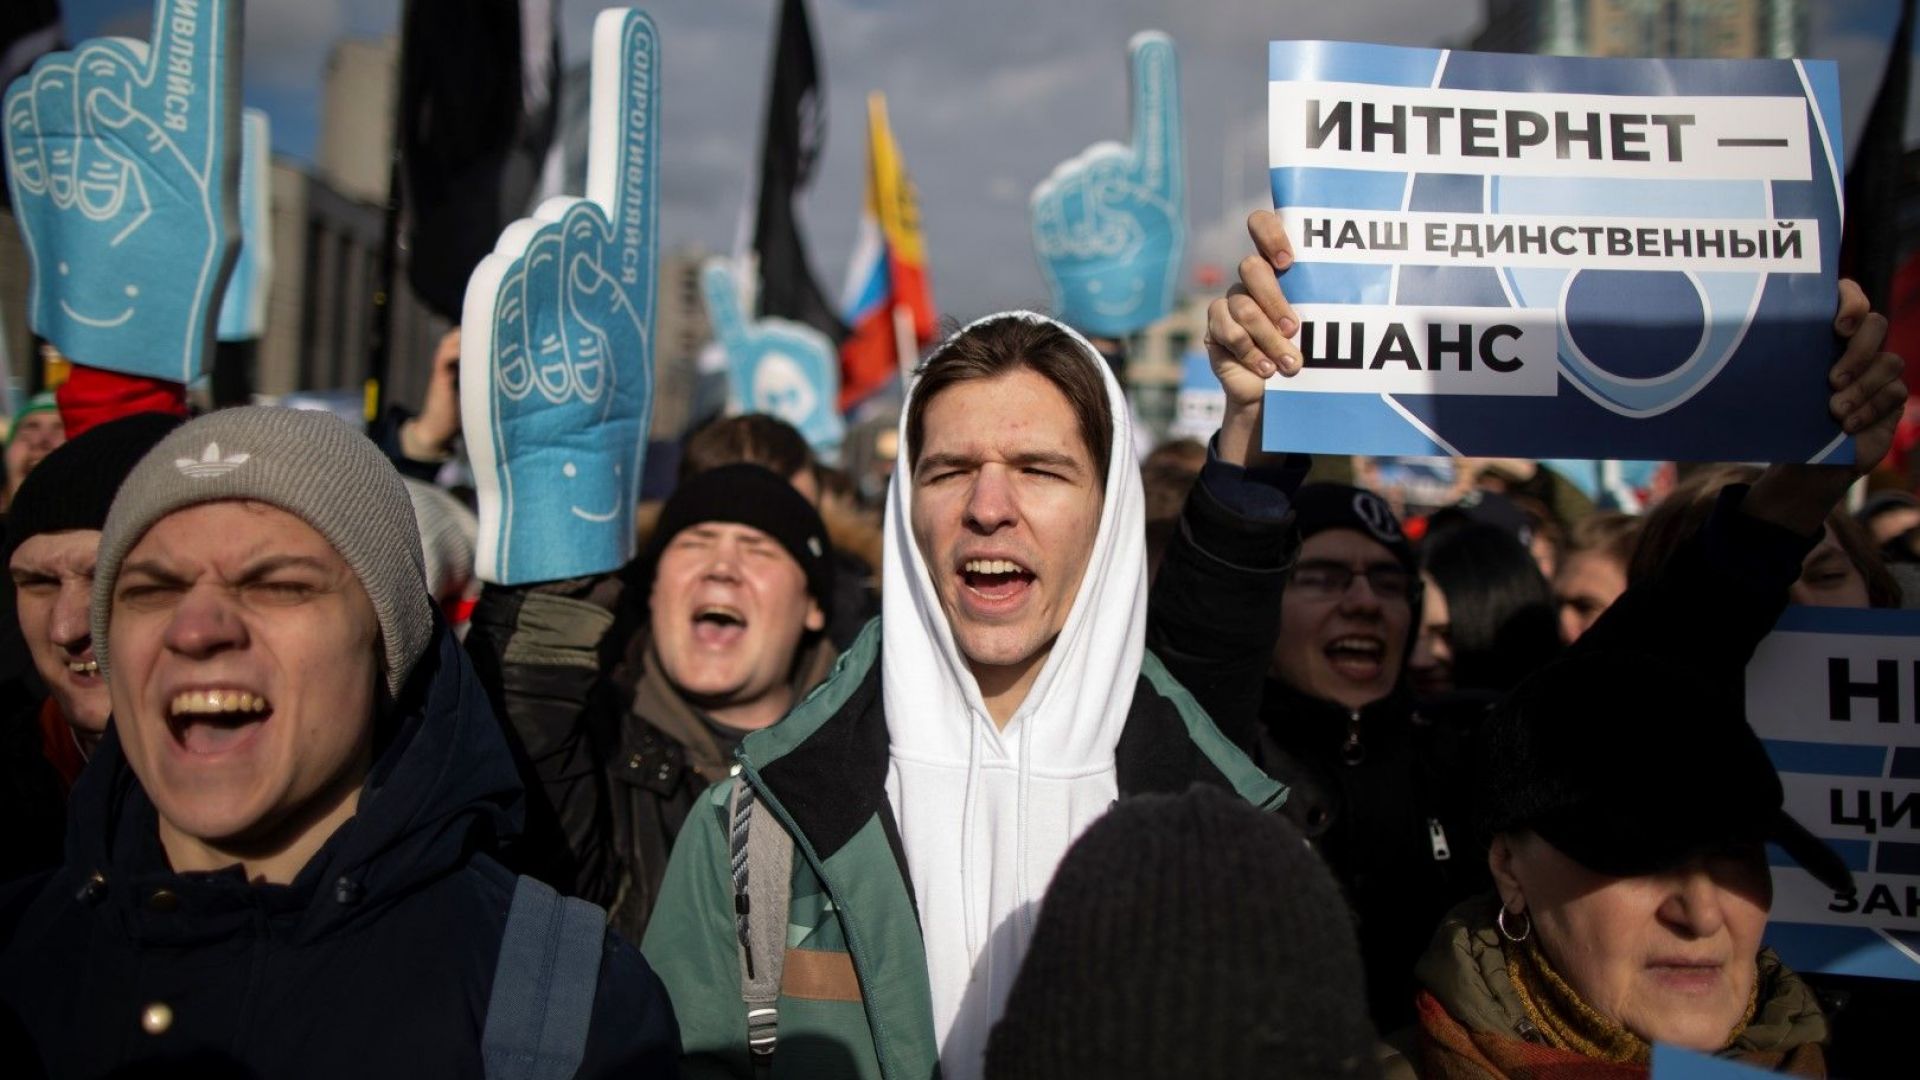 Хиляди демонстранти протестираха днес в Русия срещу проектозакон за независим